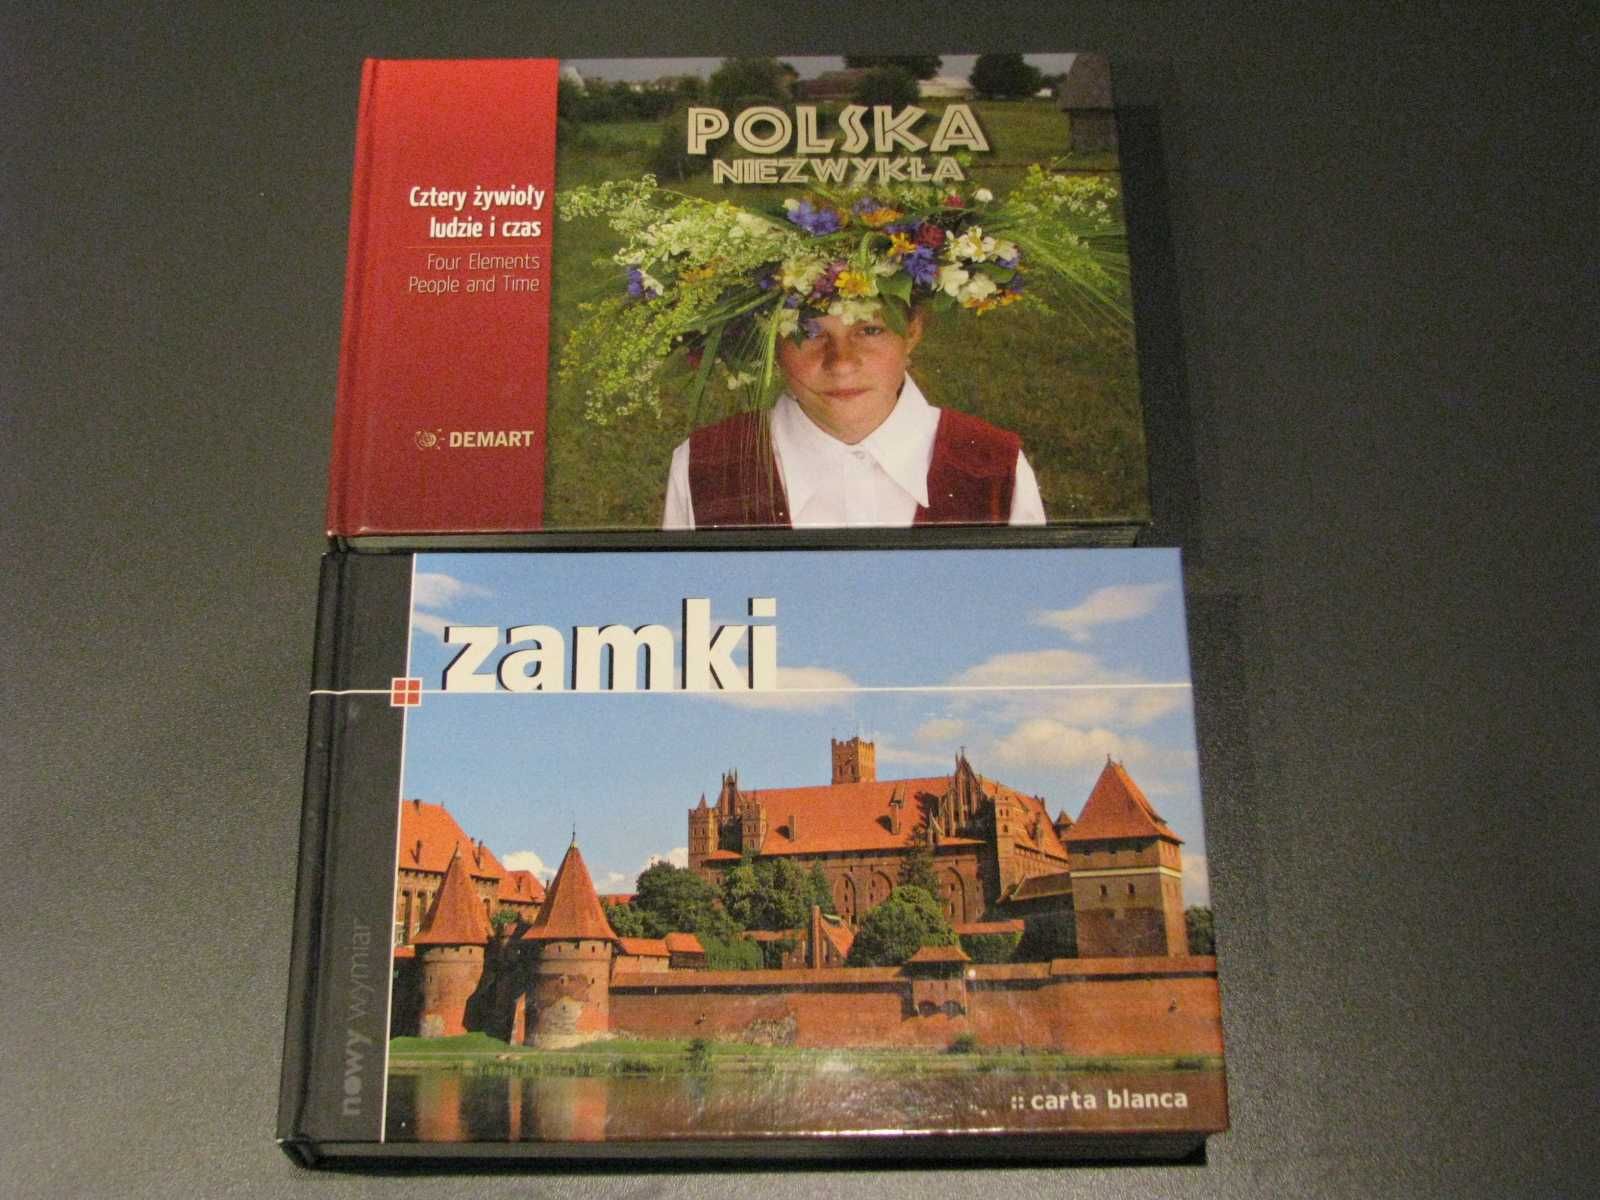 albumy " Polska niezwykła" i " Zamki"